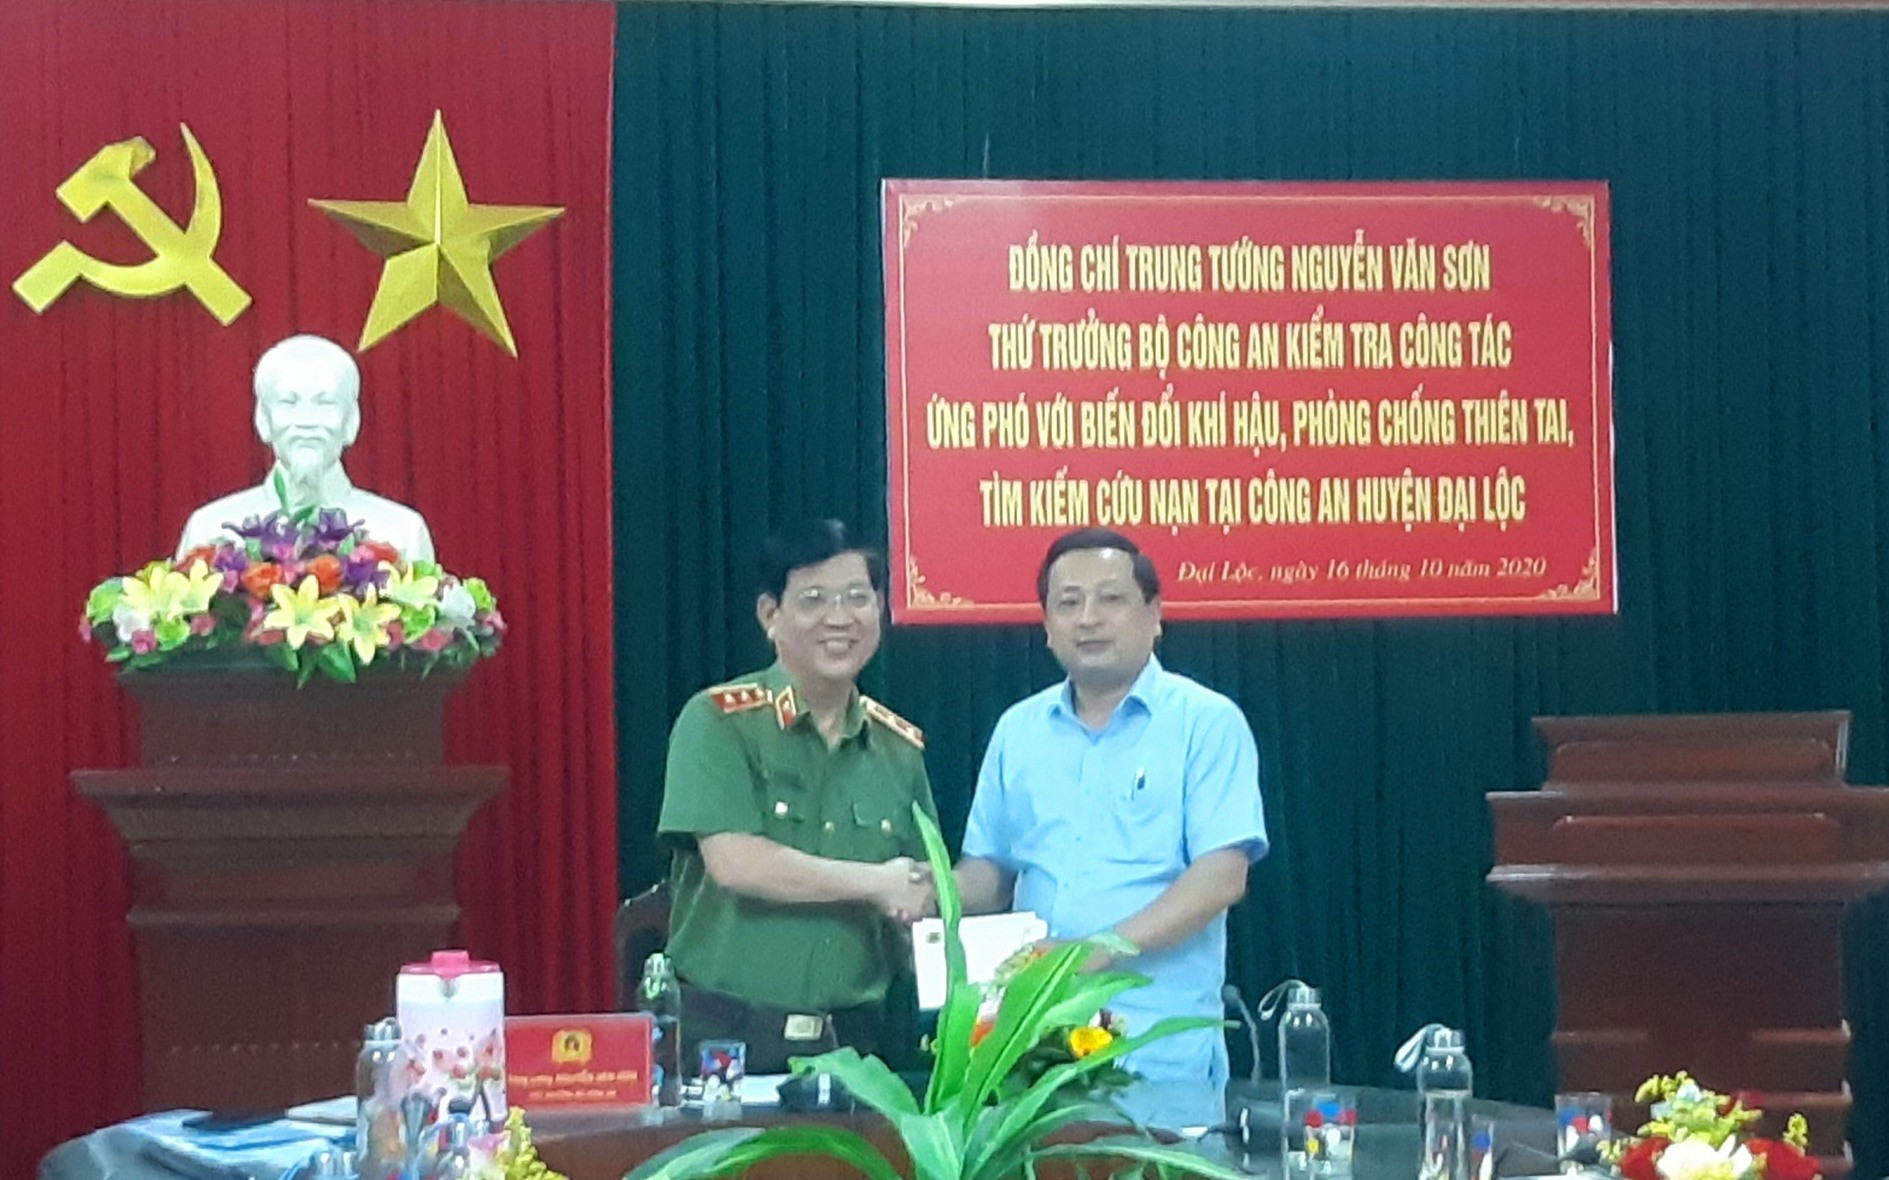 Thông qua ông Nguyễn Hảo - Phó Bí thư Thường trực Huyện ủy Đại Lộc, đoàn đã hỗ trợ 5 hộ dân bị sạt lở núi xã Đại Lãnh mỗi hộ 5 triệu đồng. Ảnh: BÍCH LIÊN